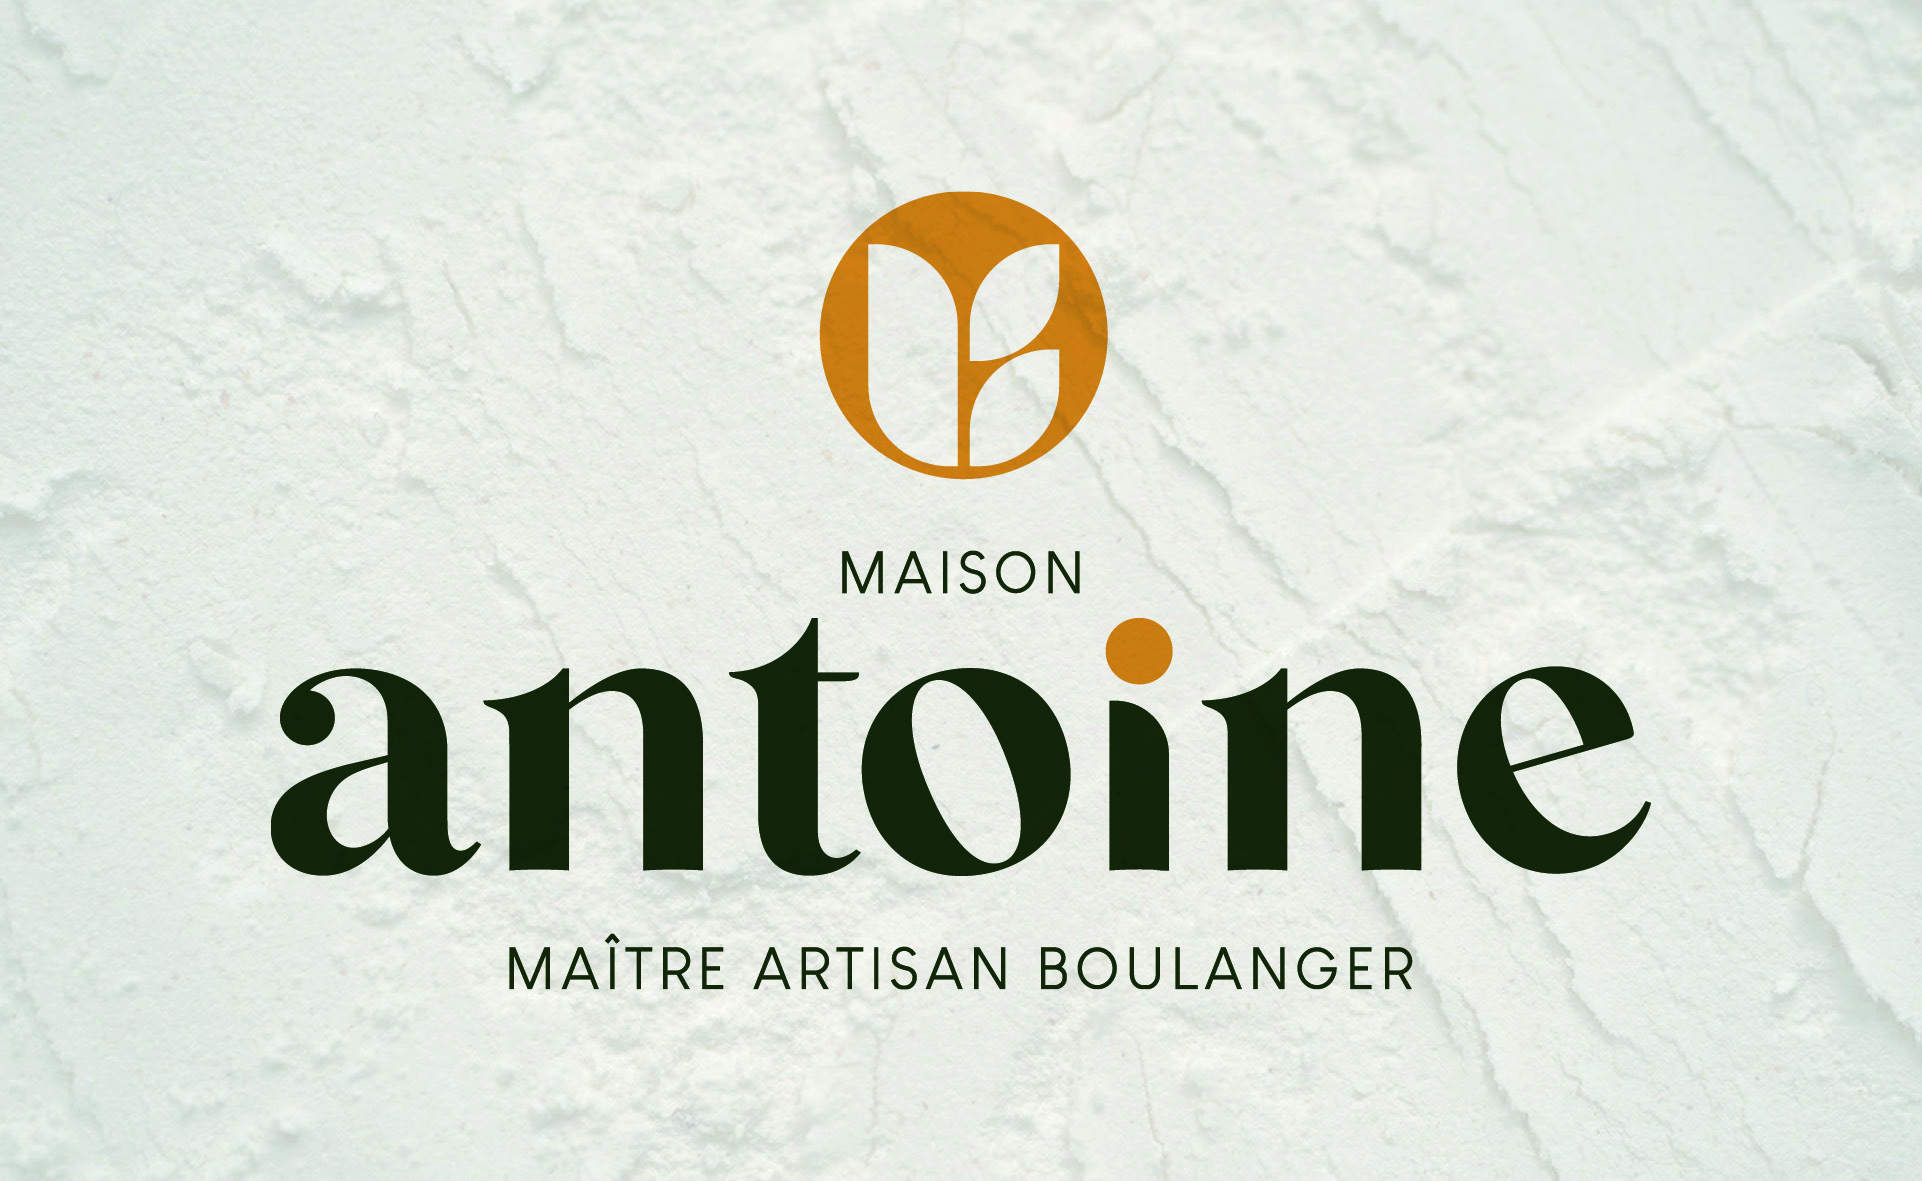 Création de logo pour la boulangerie Maison Antoine à Nantes - fond clair